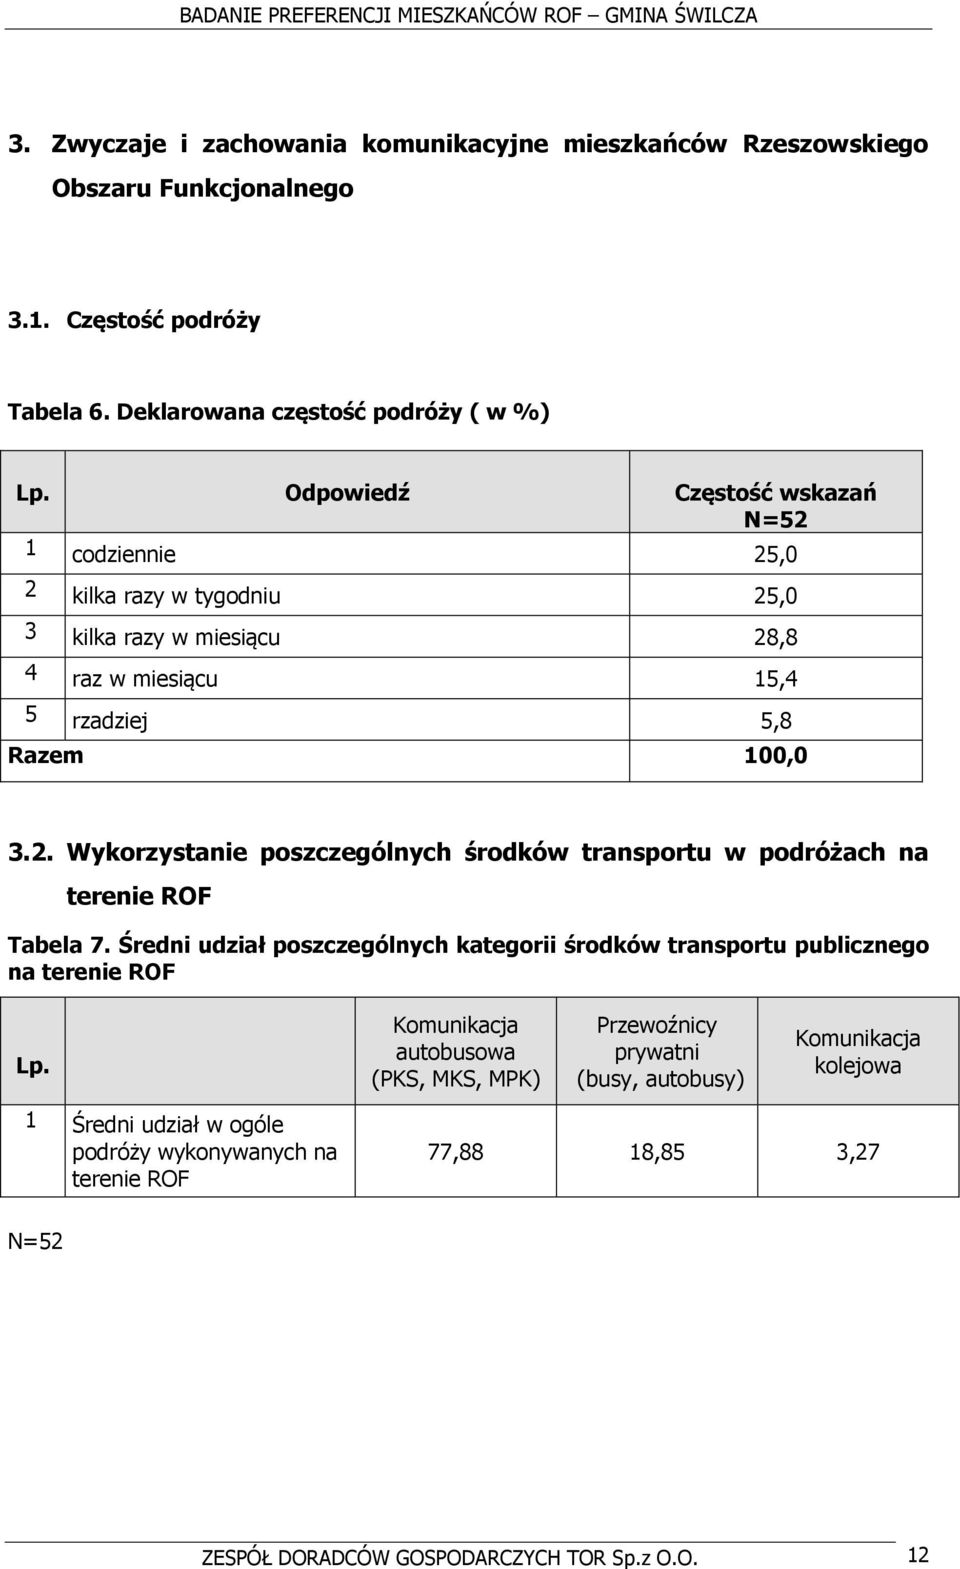 Średni udział poszczególnych kategorii środków transportu publicznego na terenie ROF Lp.